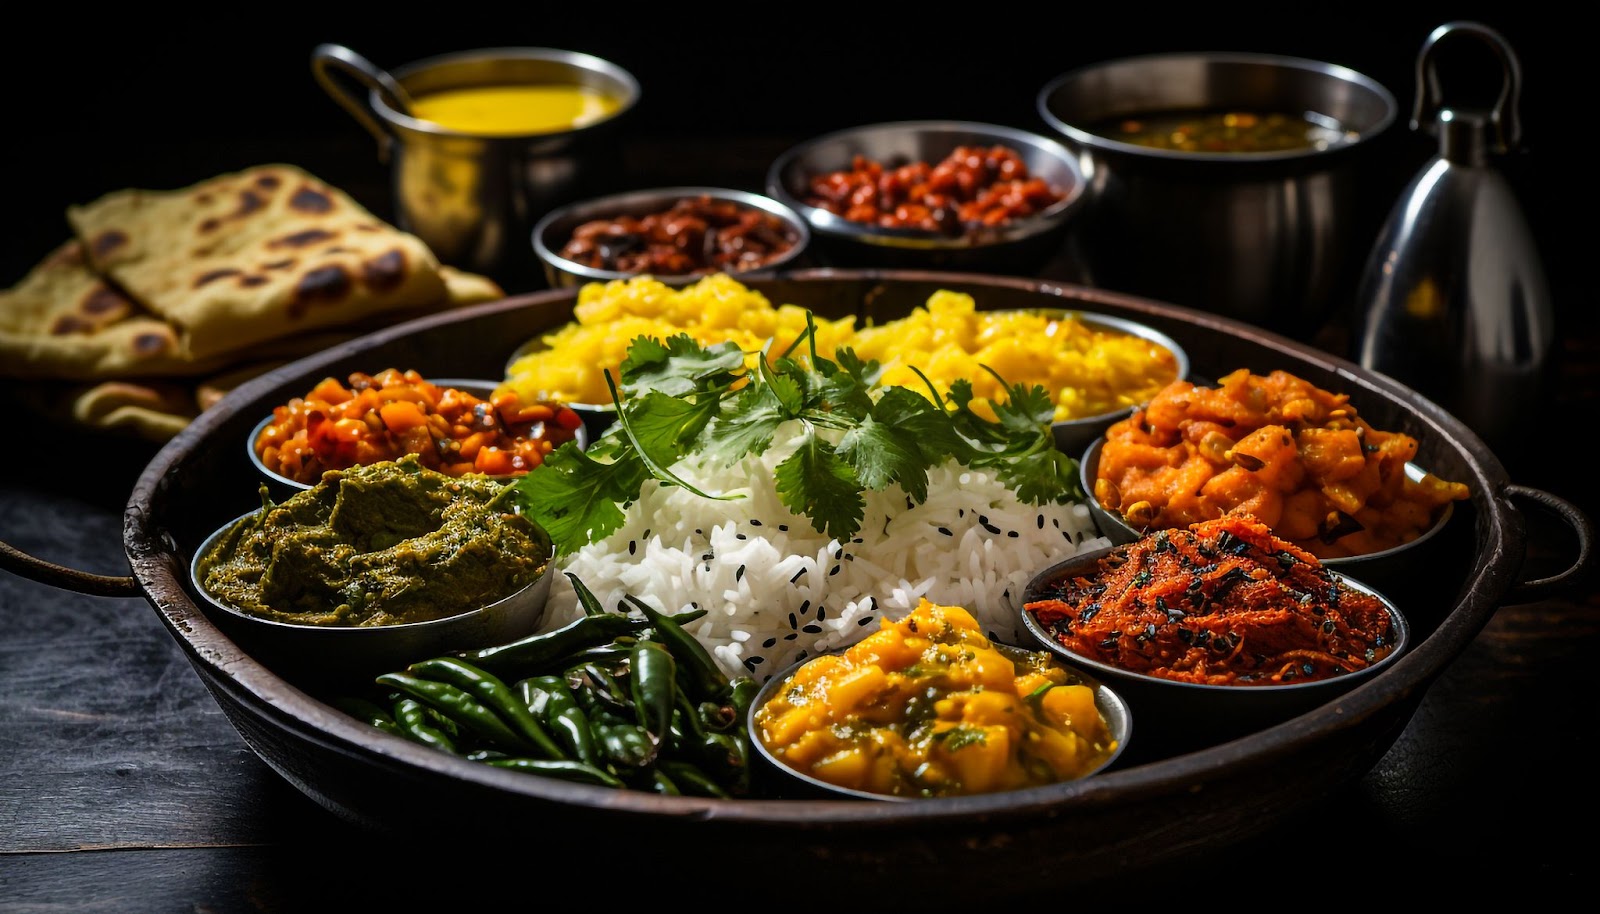 South Asian Cuisine